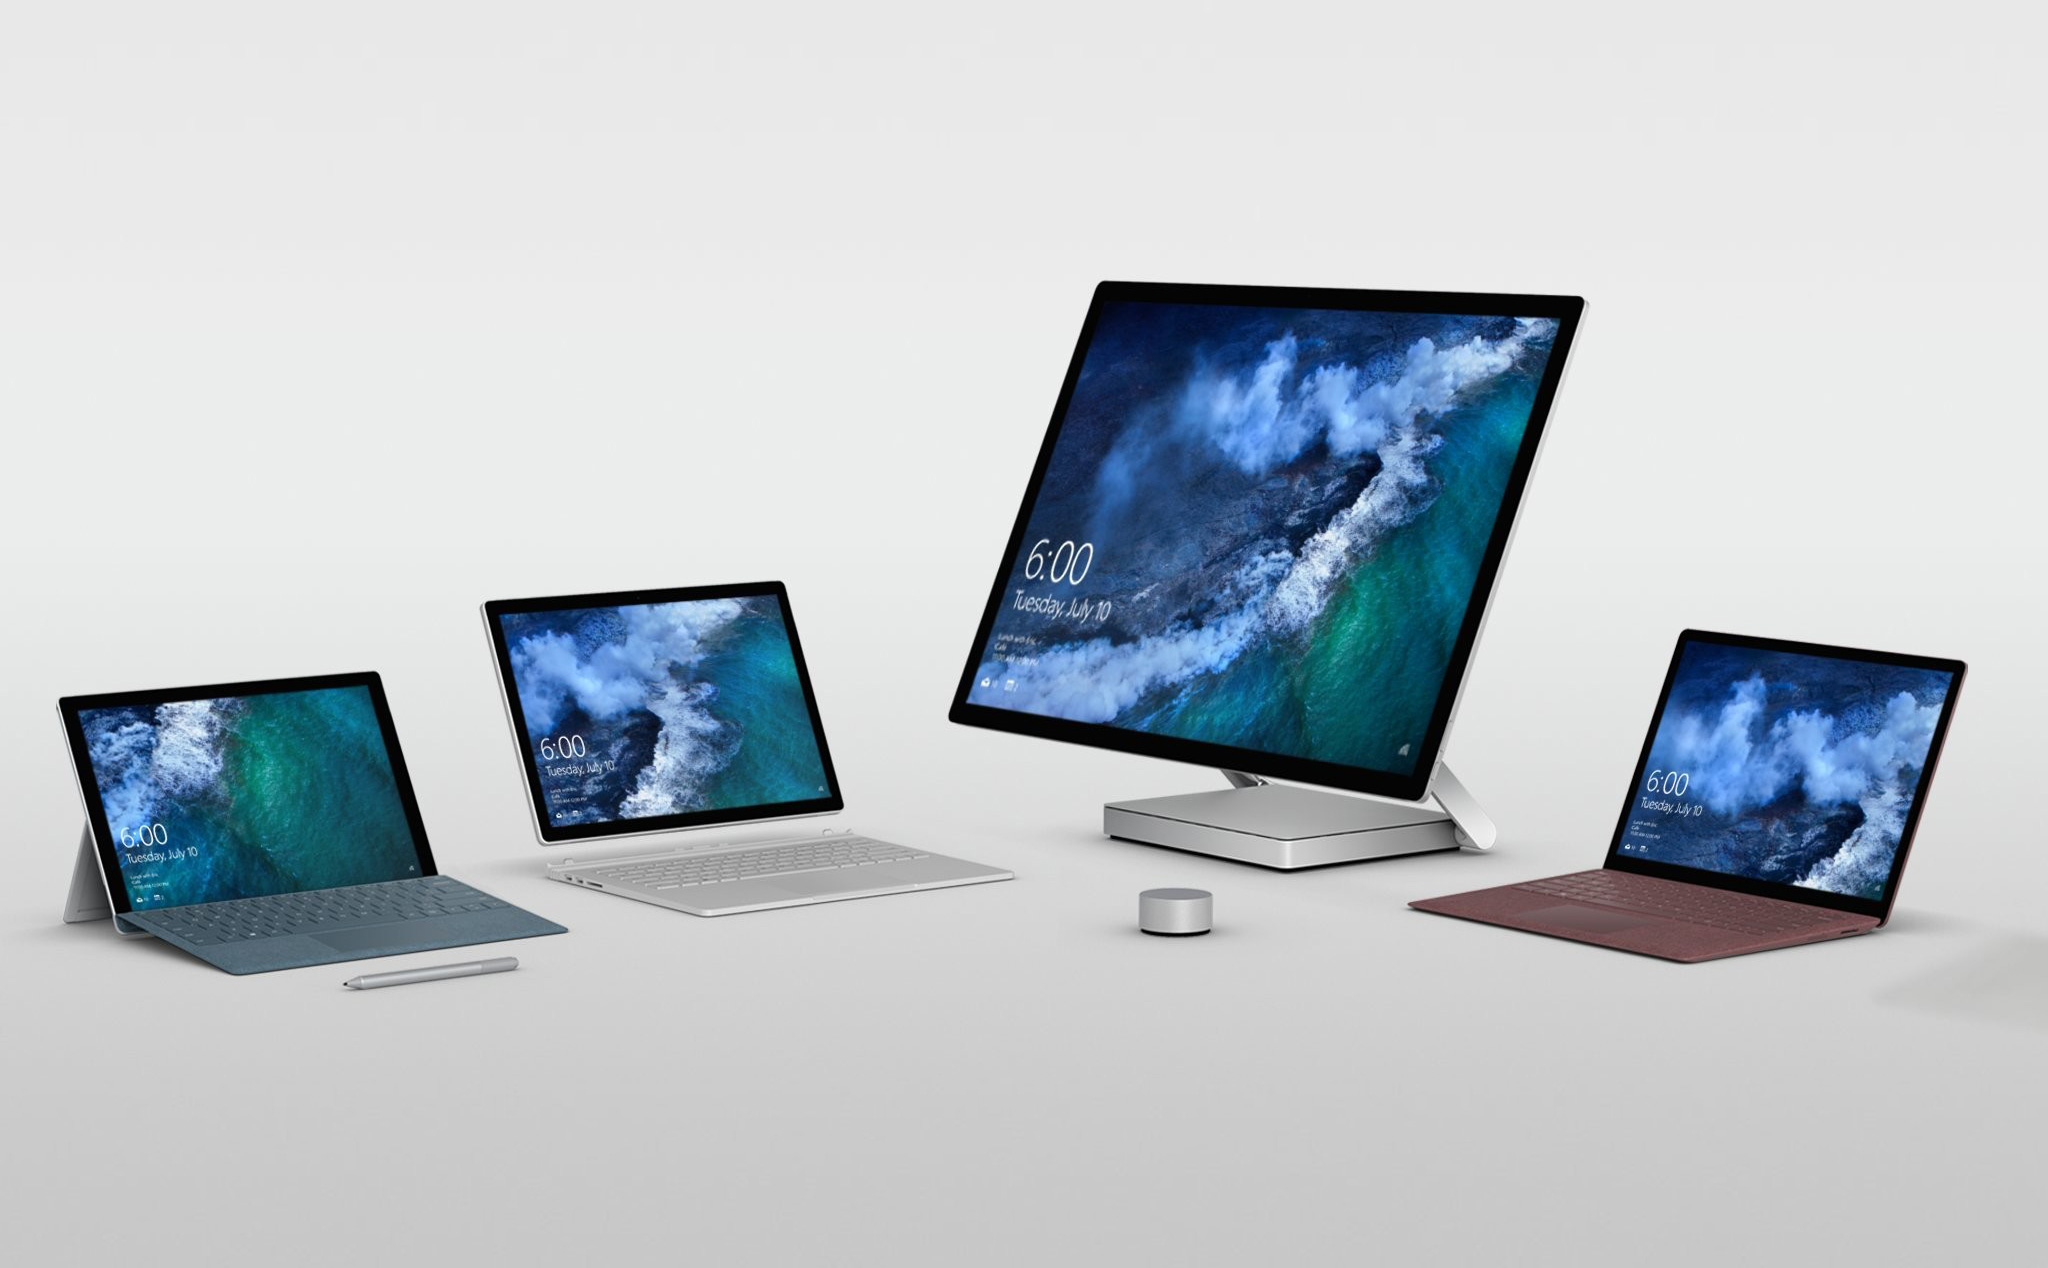 Đây là âm thanh của những chiếc Microsoft Surface mới, anh em đoán thử xem nó là gì